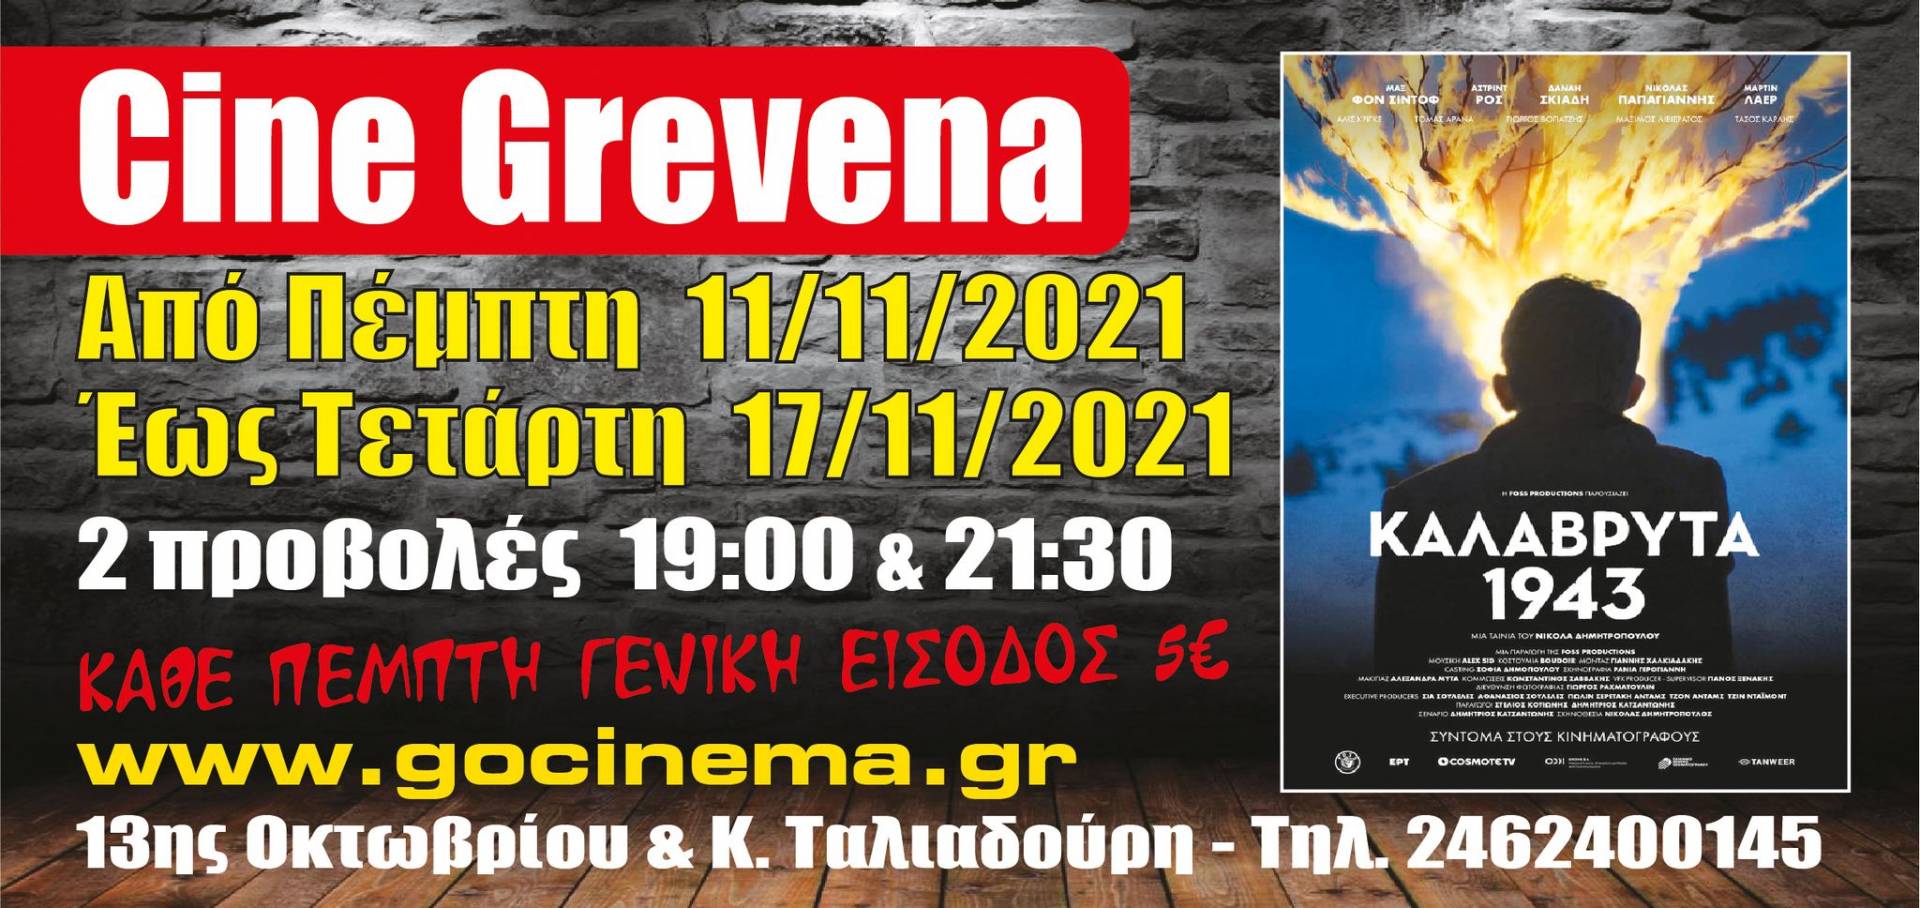 Νέα κινηματογραφική εβδομάδα στο Cine Grevena